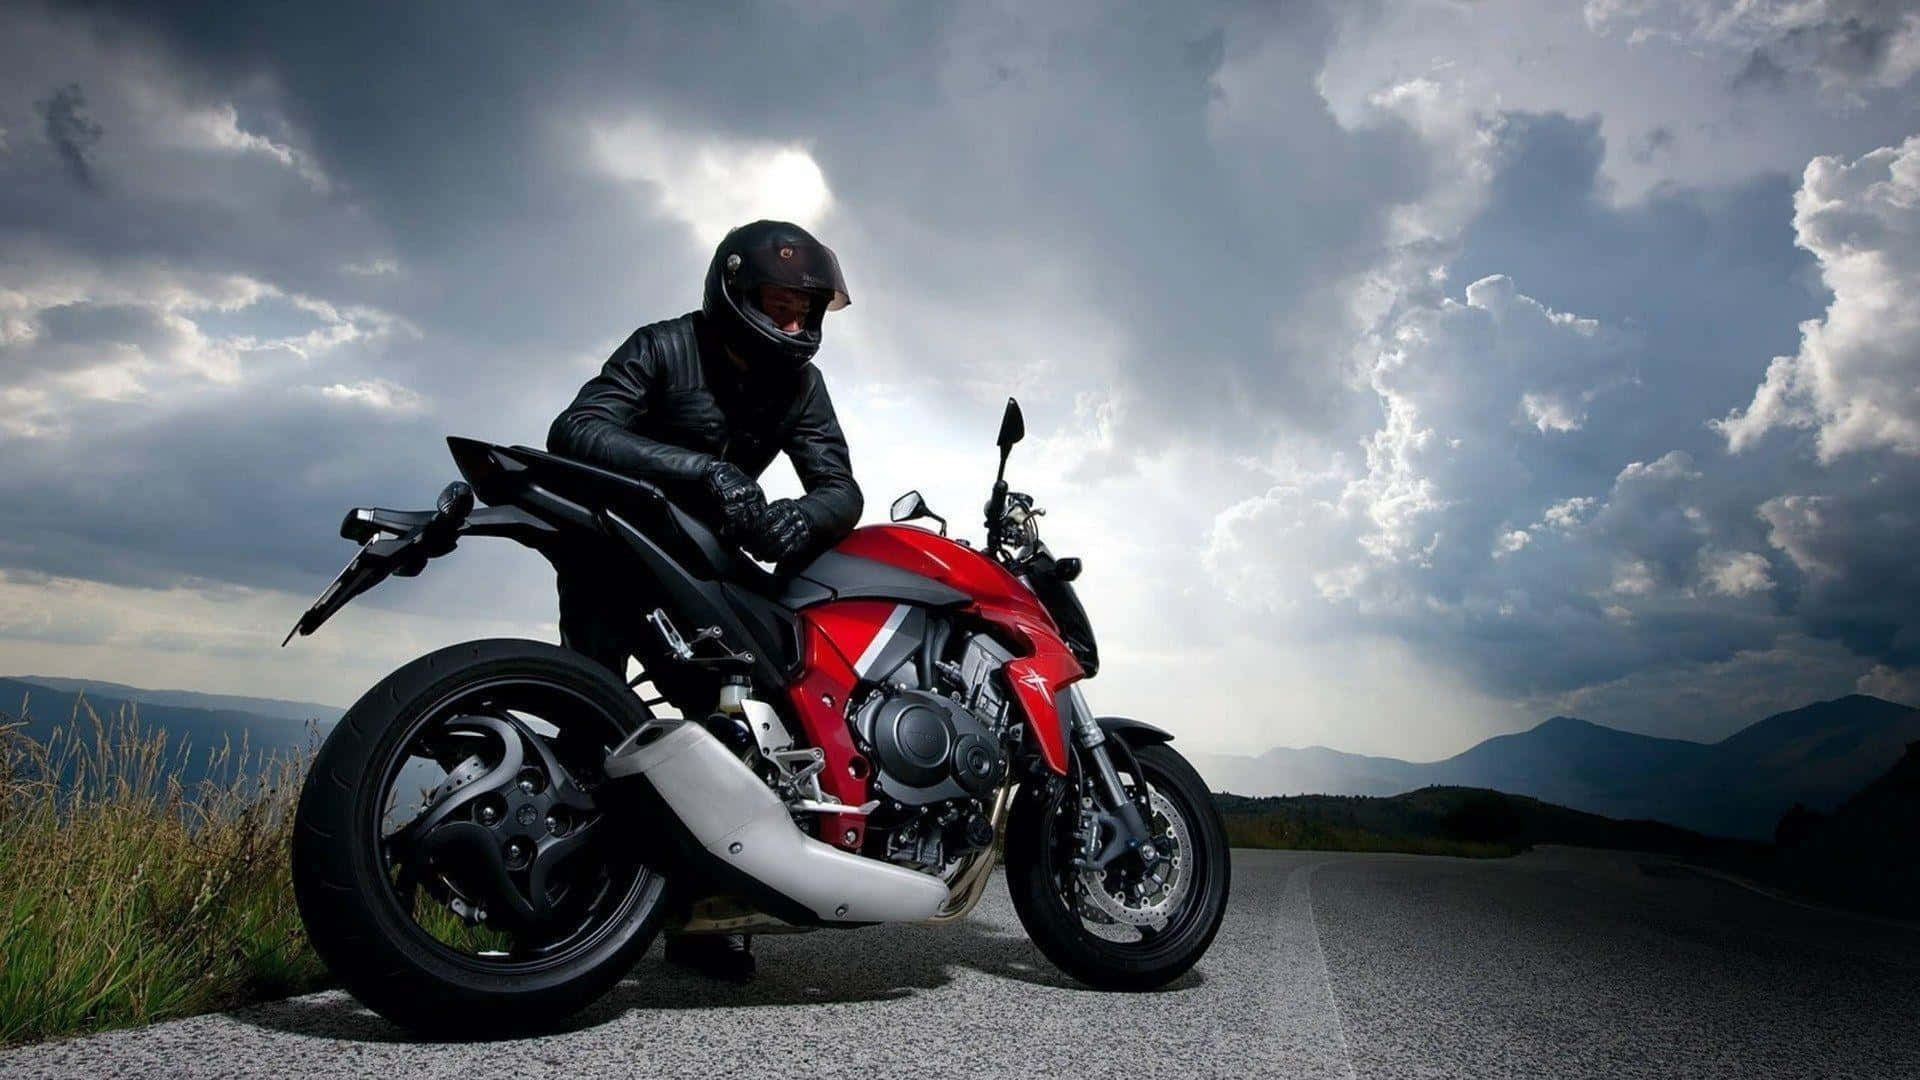 Imágenesde Motocicleta Roja Sin Ropa Y Chaqueta Negra Para Motociclistas.